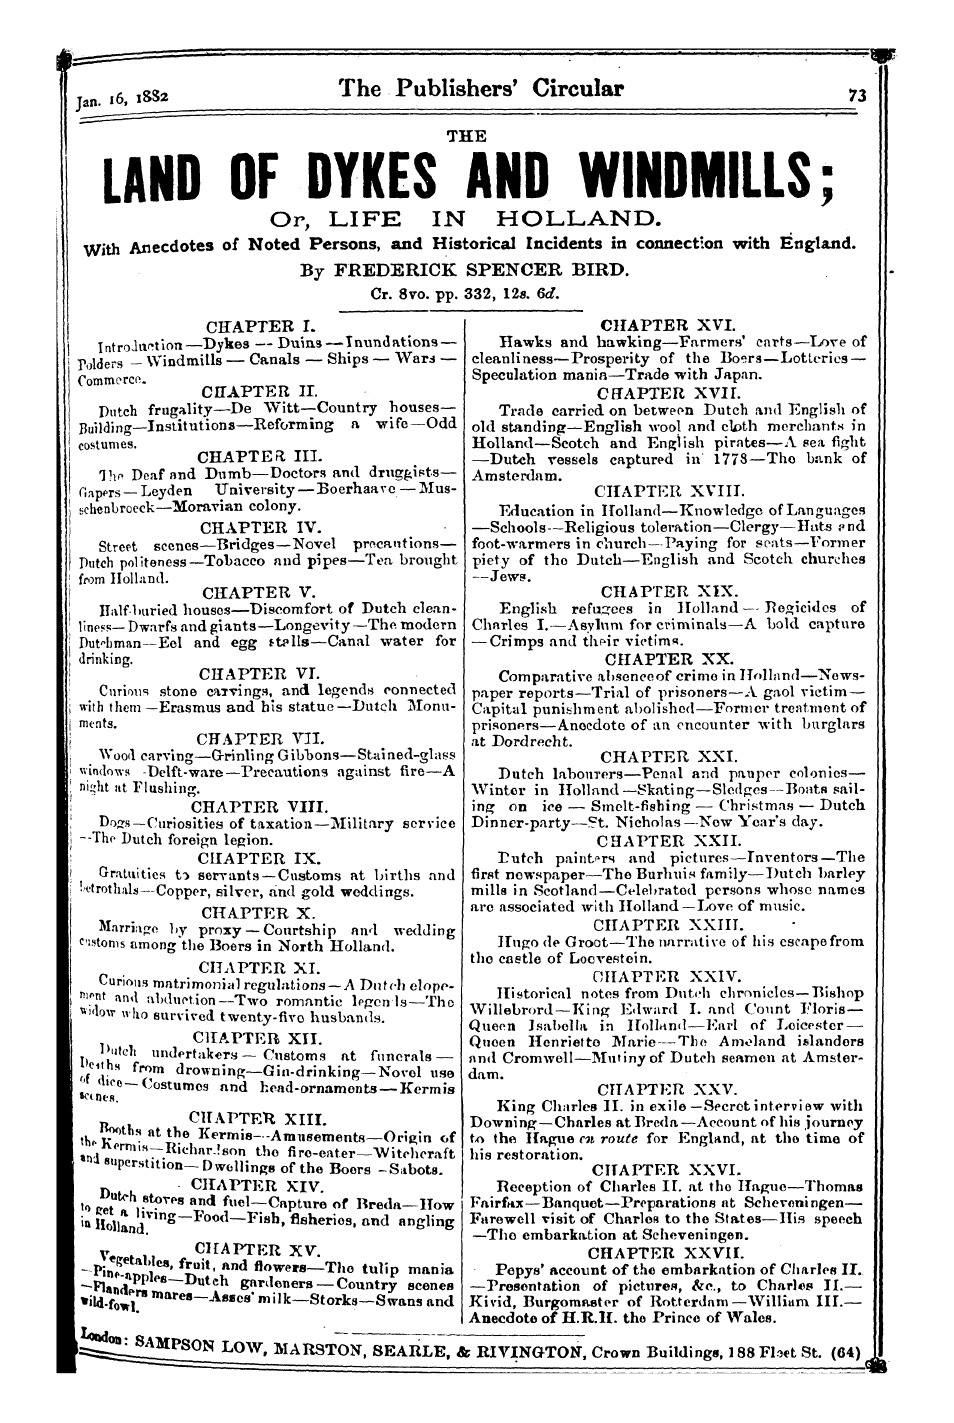 Publishers’ Circular (1880-1890): jS F Y, 1st edition - I ^«** • »*^ W « « « * ^M M ^